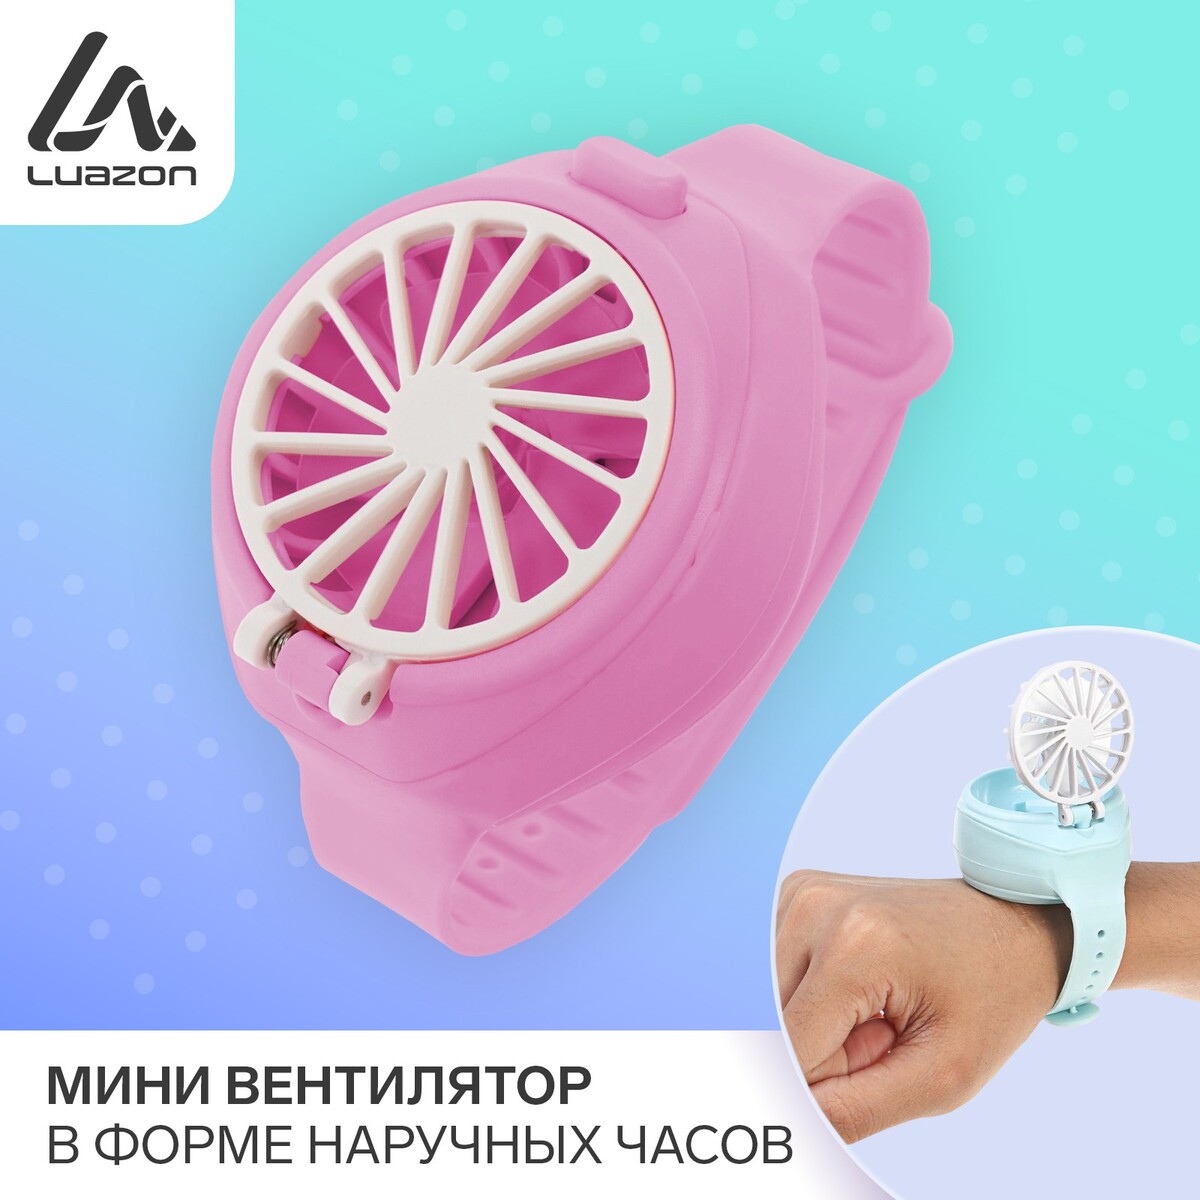 Мини вентилятор в форме наручных часов lof-10, 3 скорости, поворотный, розовый мини вентилятор в форме наручных часов lof 09 3 скорости подсветка розовый